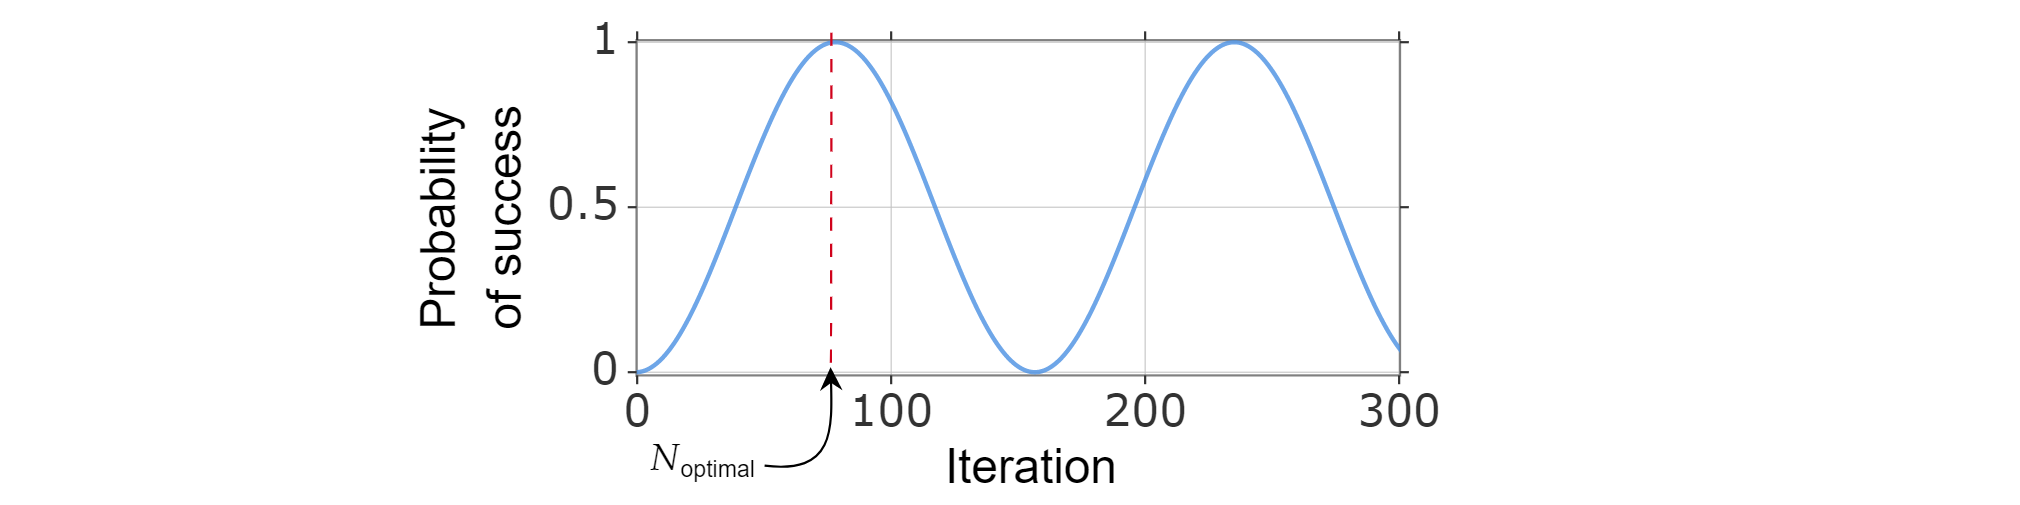 Plot sinusoidal probabilitas keberhasilan sebagai fungsi iterasi Grover. Jumlah perulangan yang optimal mendekati puncak pertama.